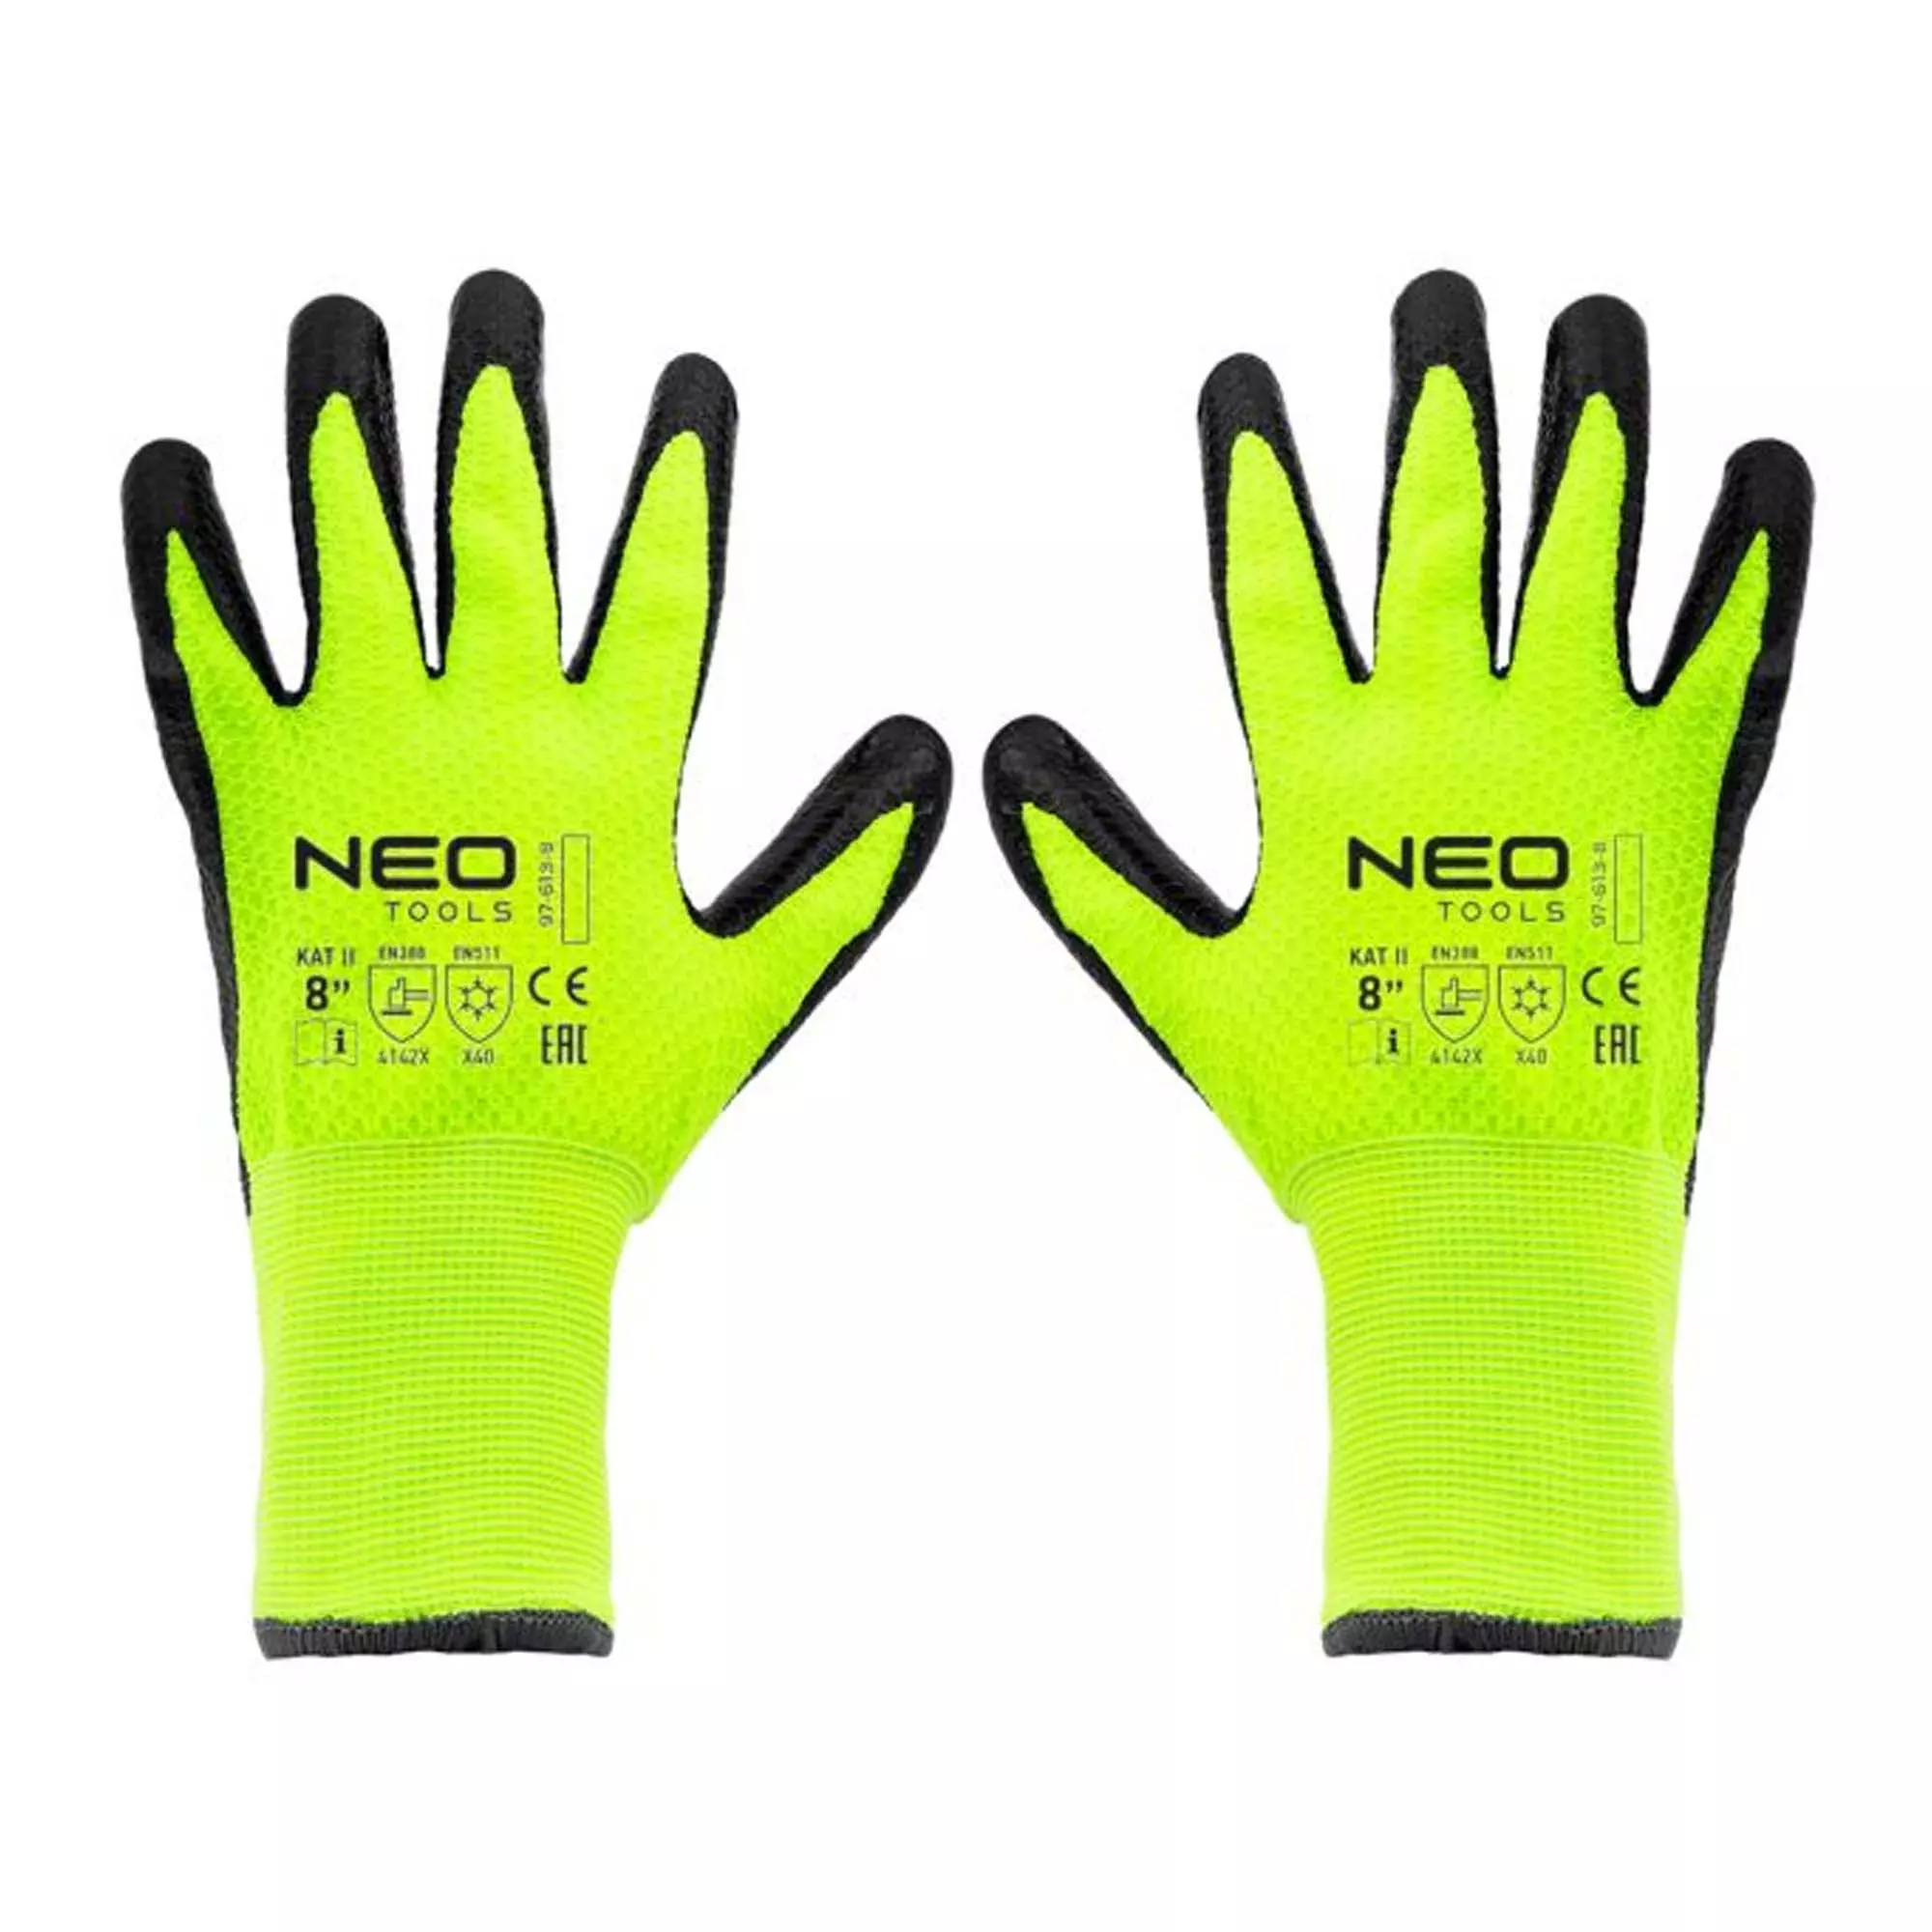 Изолированные рабочие перчатки NEO TOOLS, нейлон с латексным покрытием, 4142X, размер 8 (97-613-8)